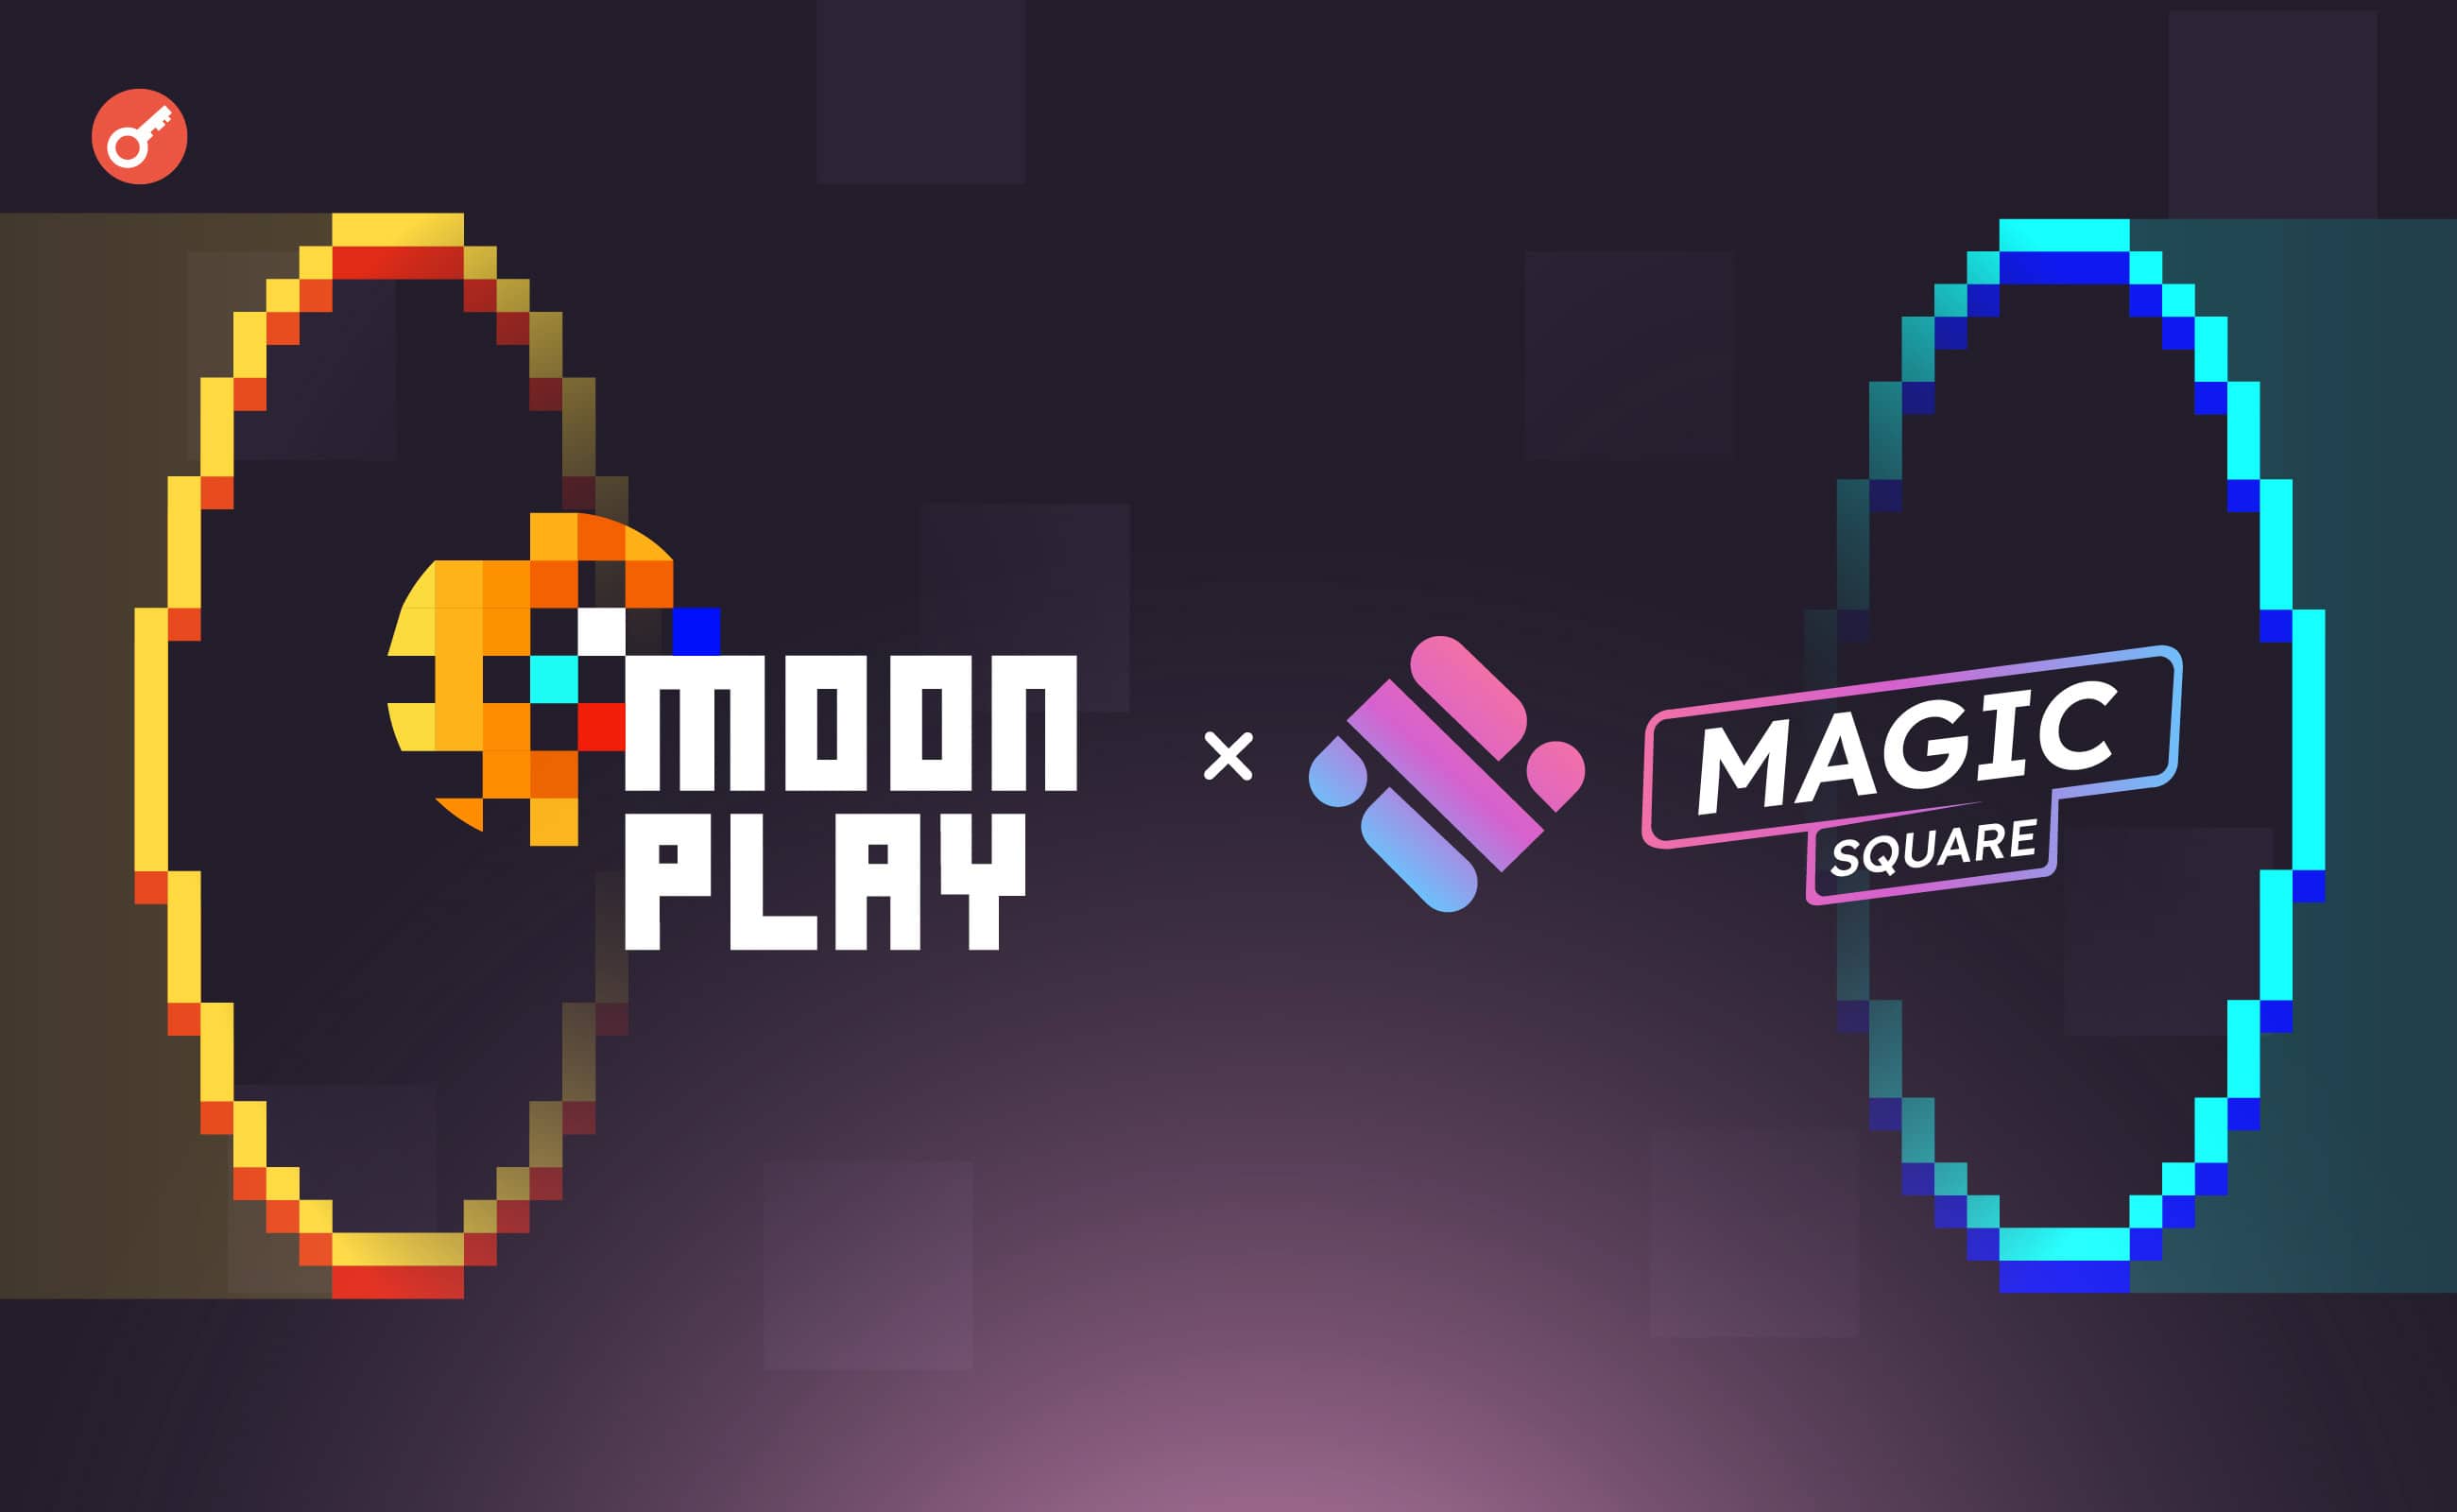 Magic Square объявила о сотрудничестве c MoonPlay в рамках новой игры. Заглавный коллаж новости.